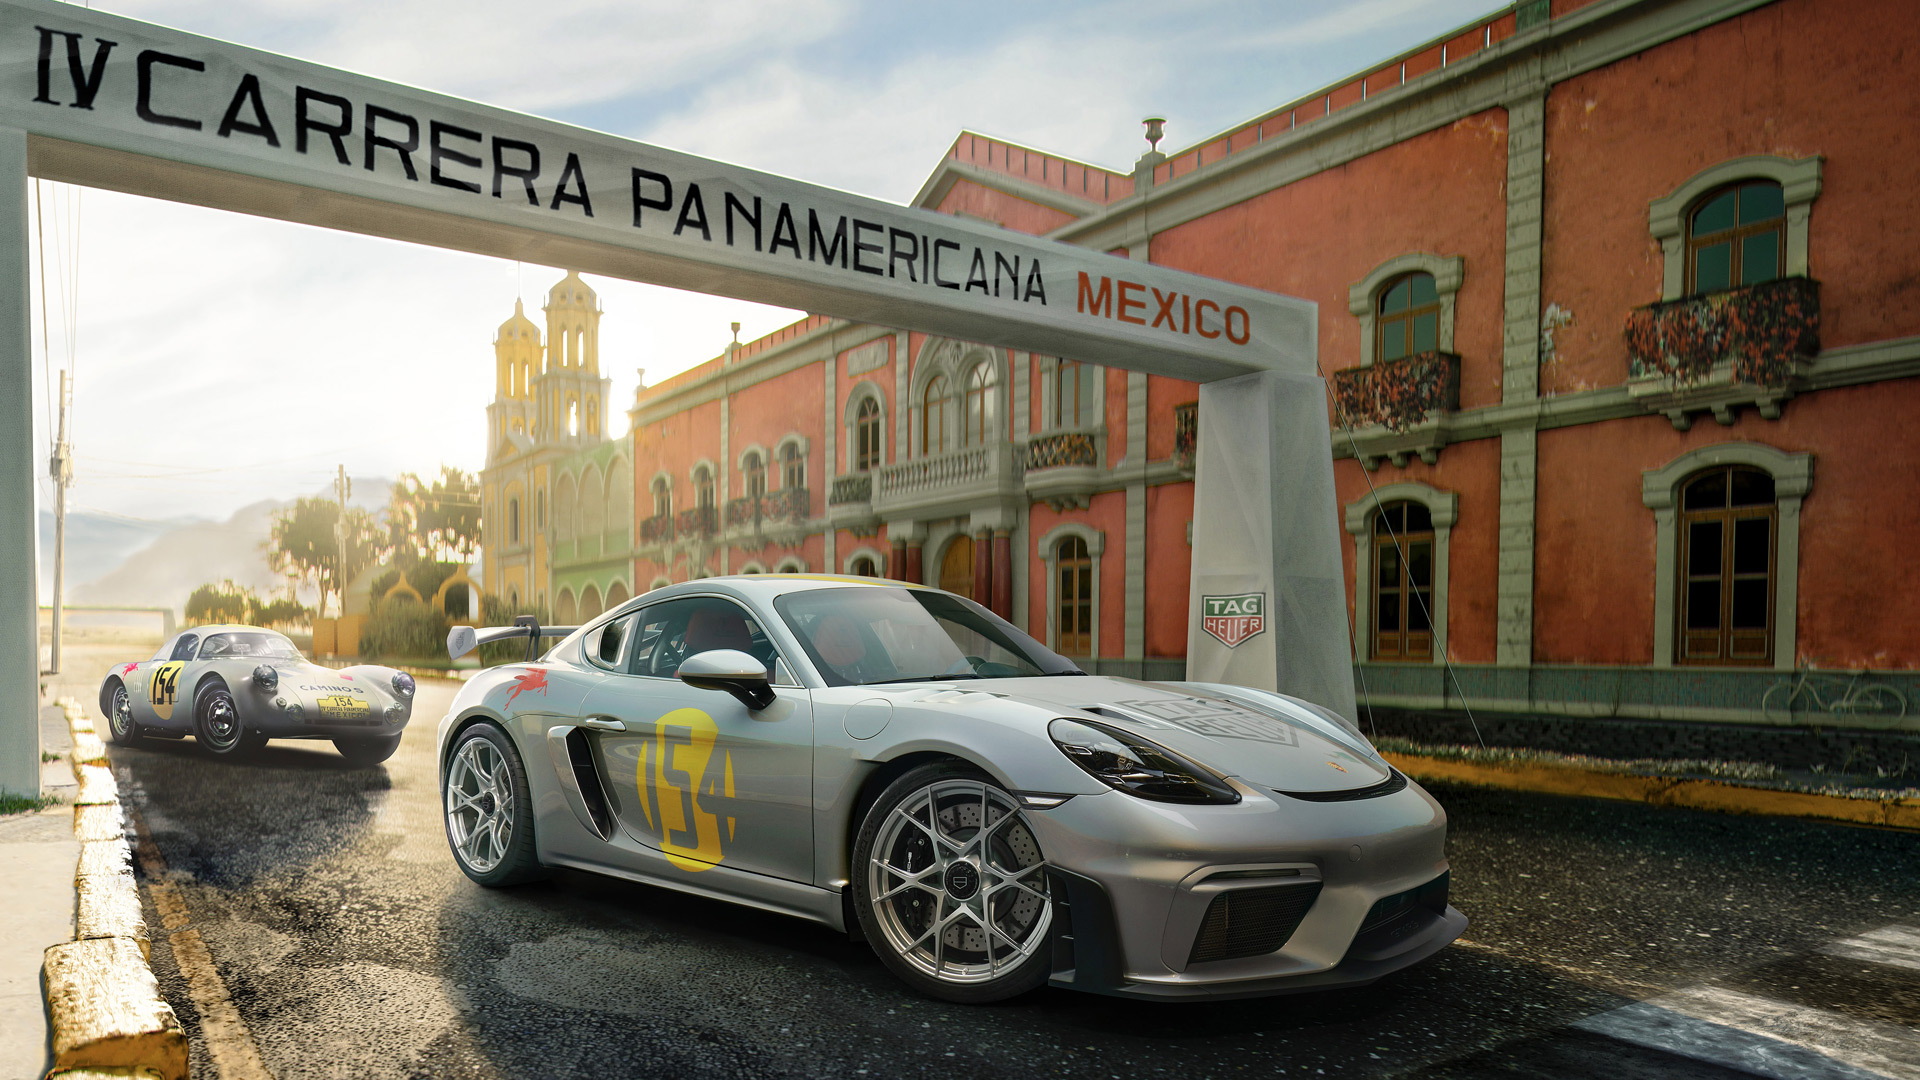 Porsche 718 Cayman GT4 RS TAG Heuer x Porsche - Legends of Panamericana